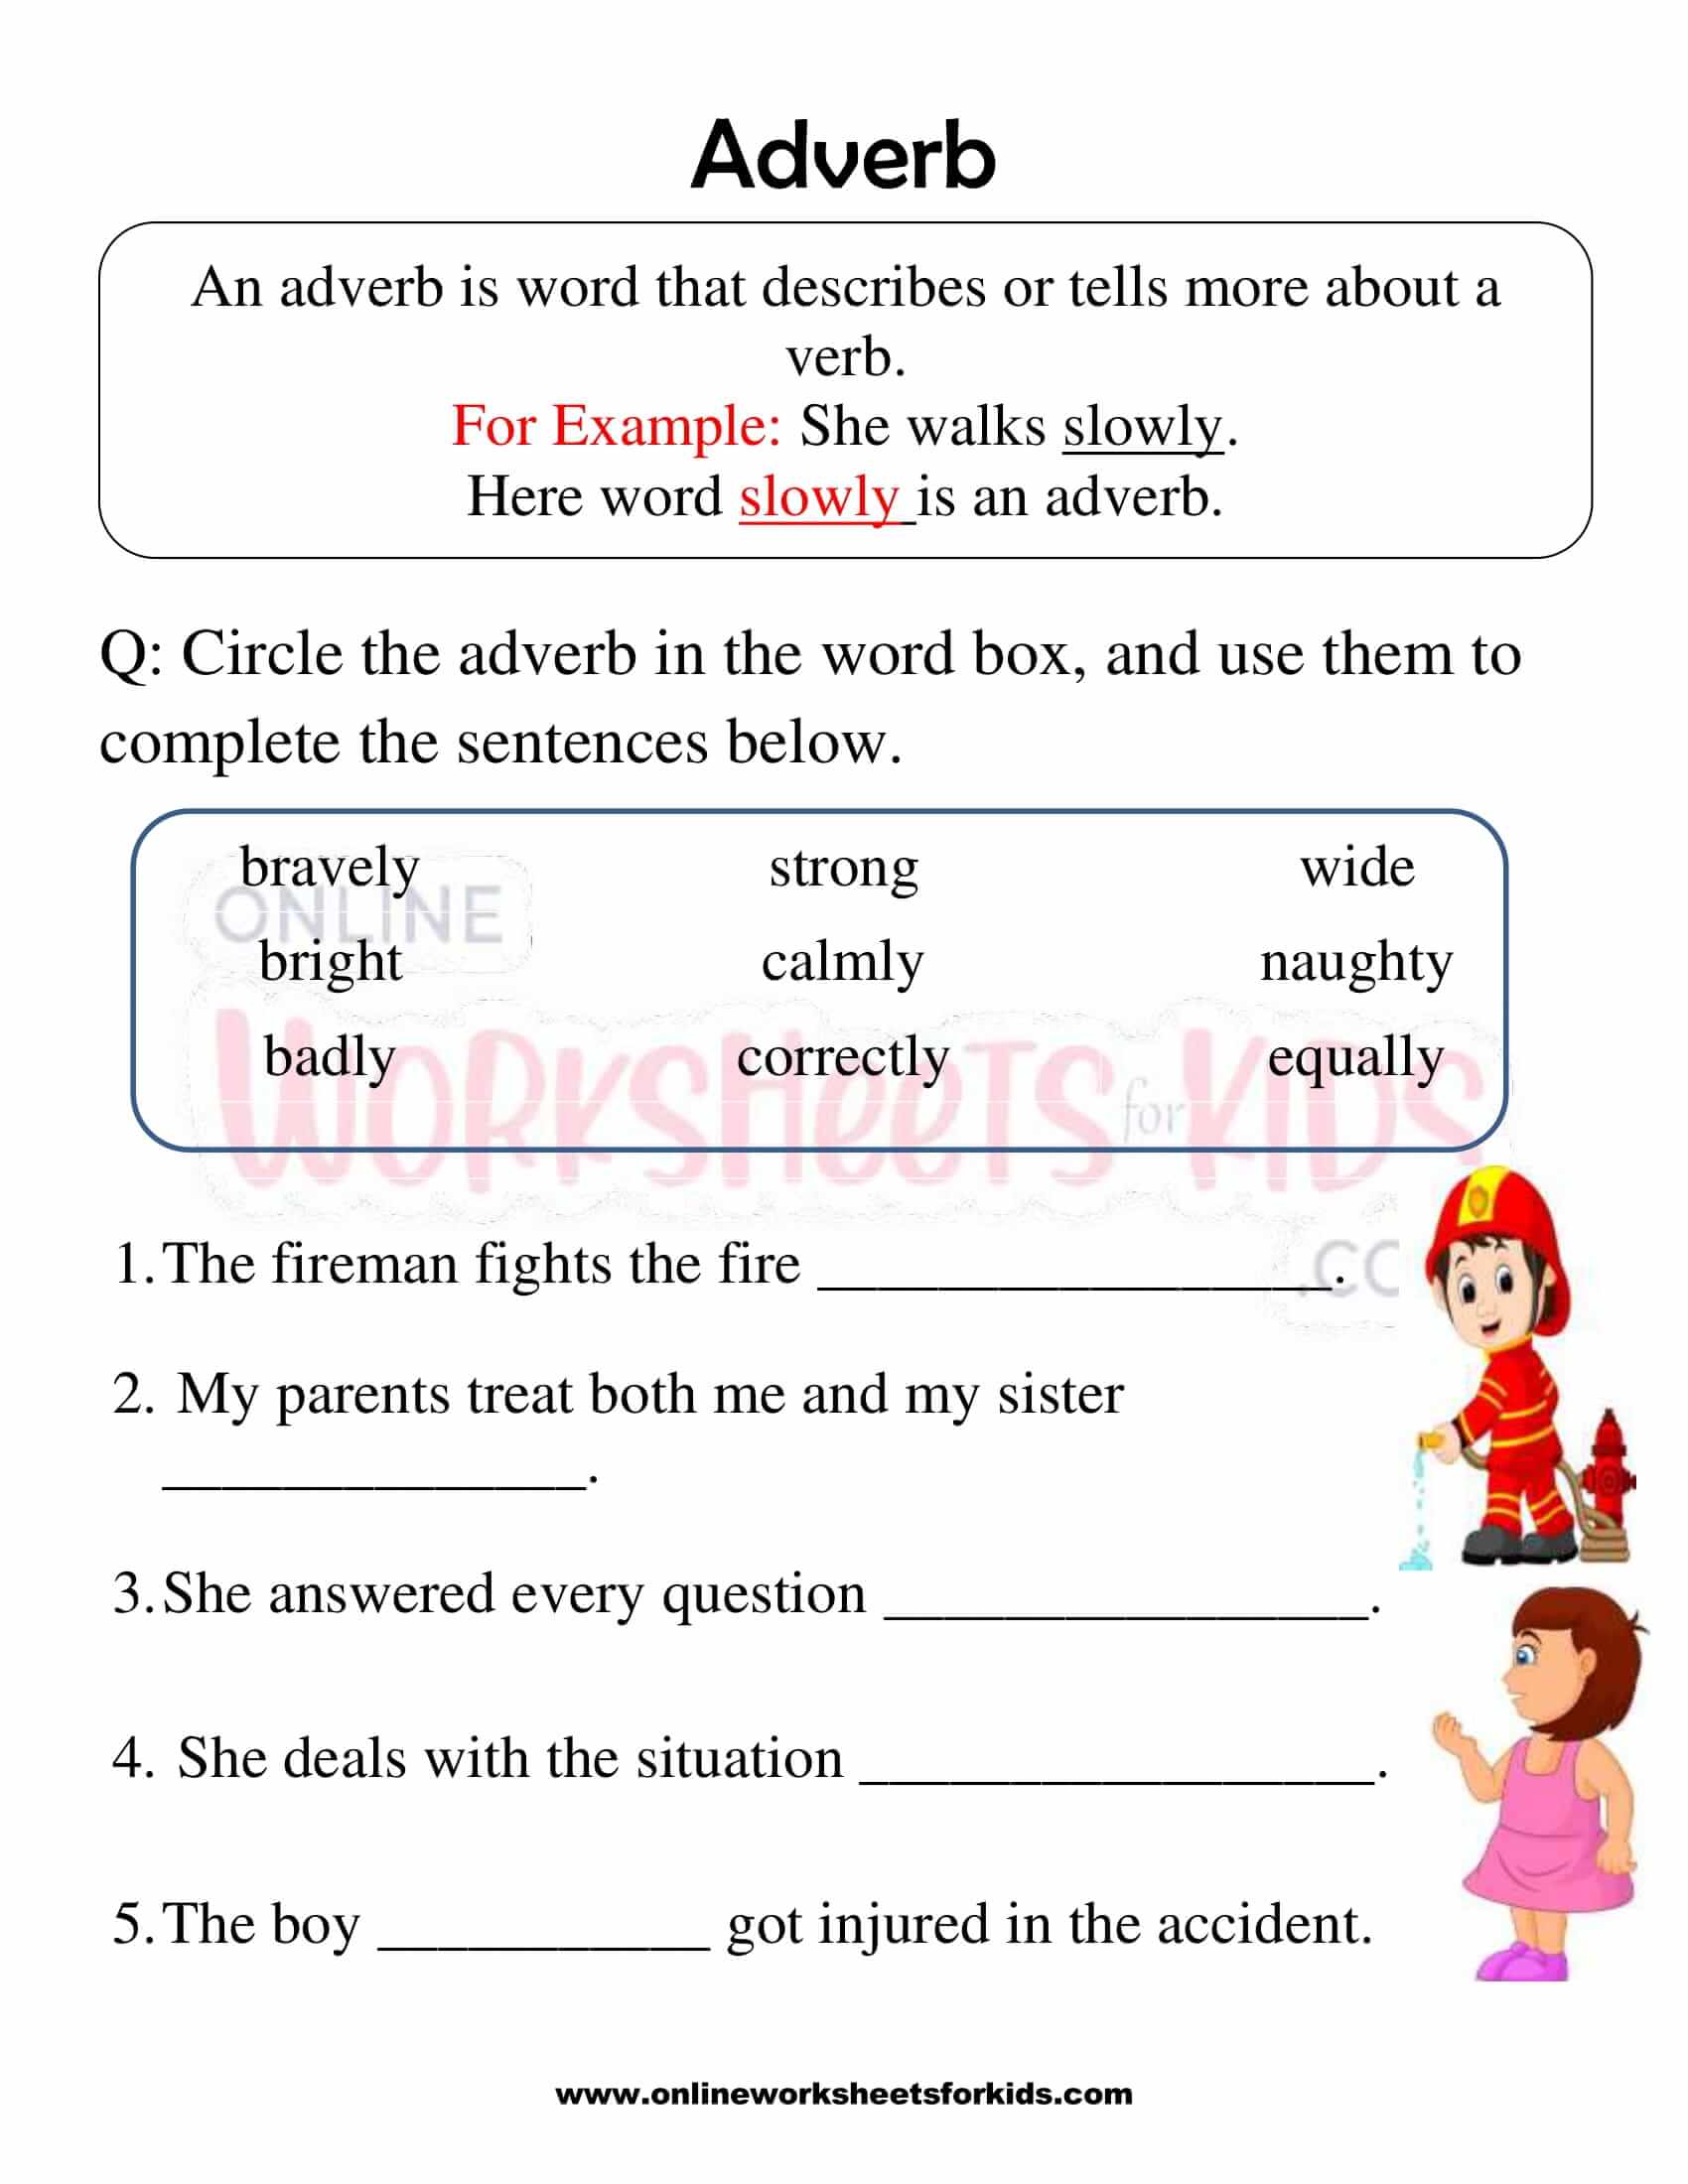 adverb-worksheet-for-grade-1-1